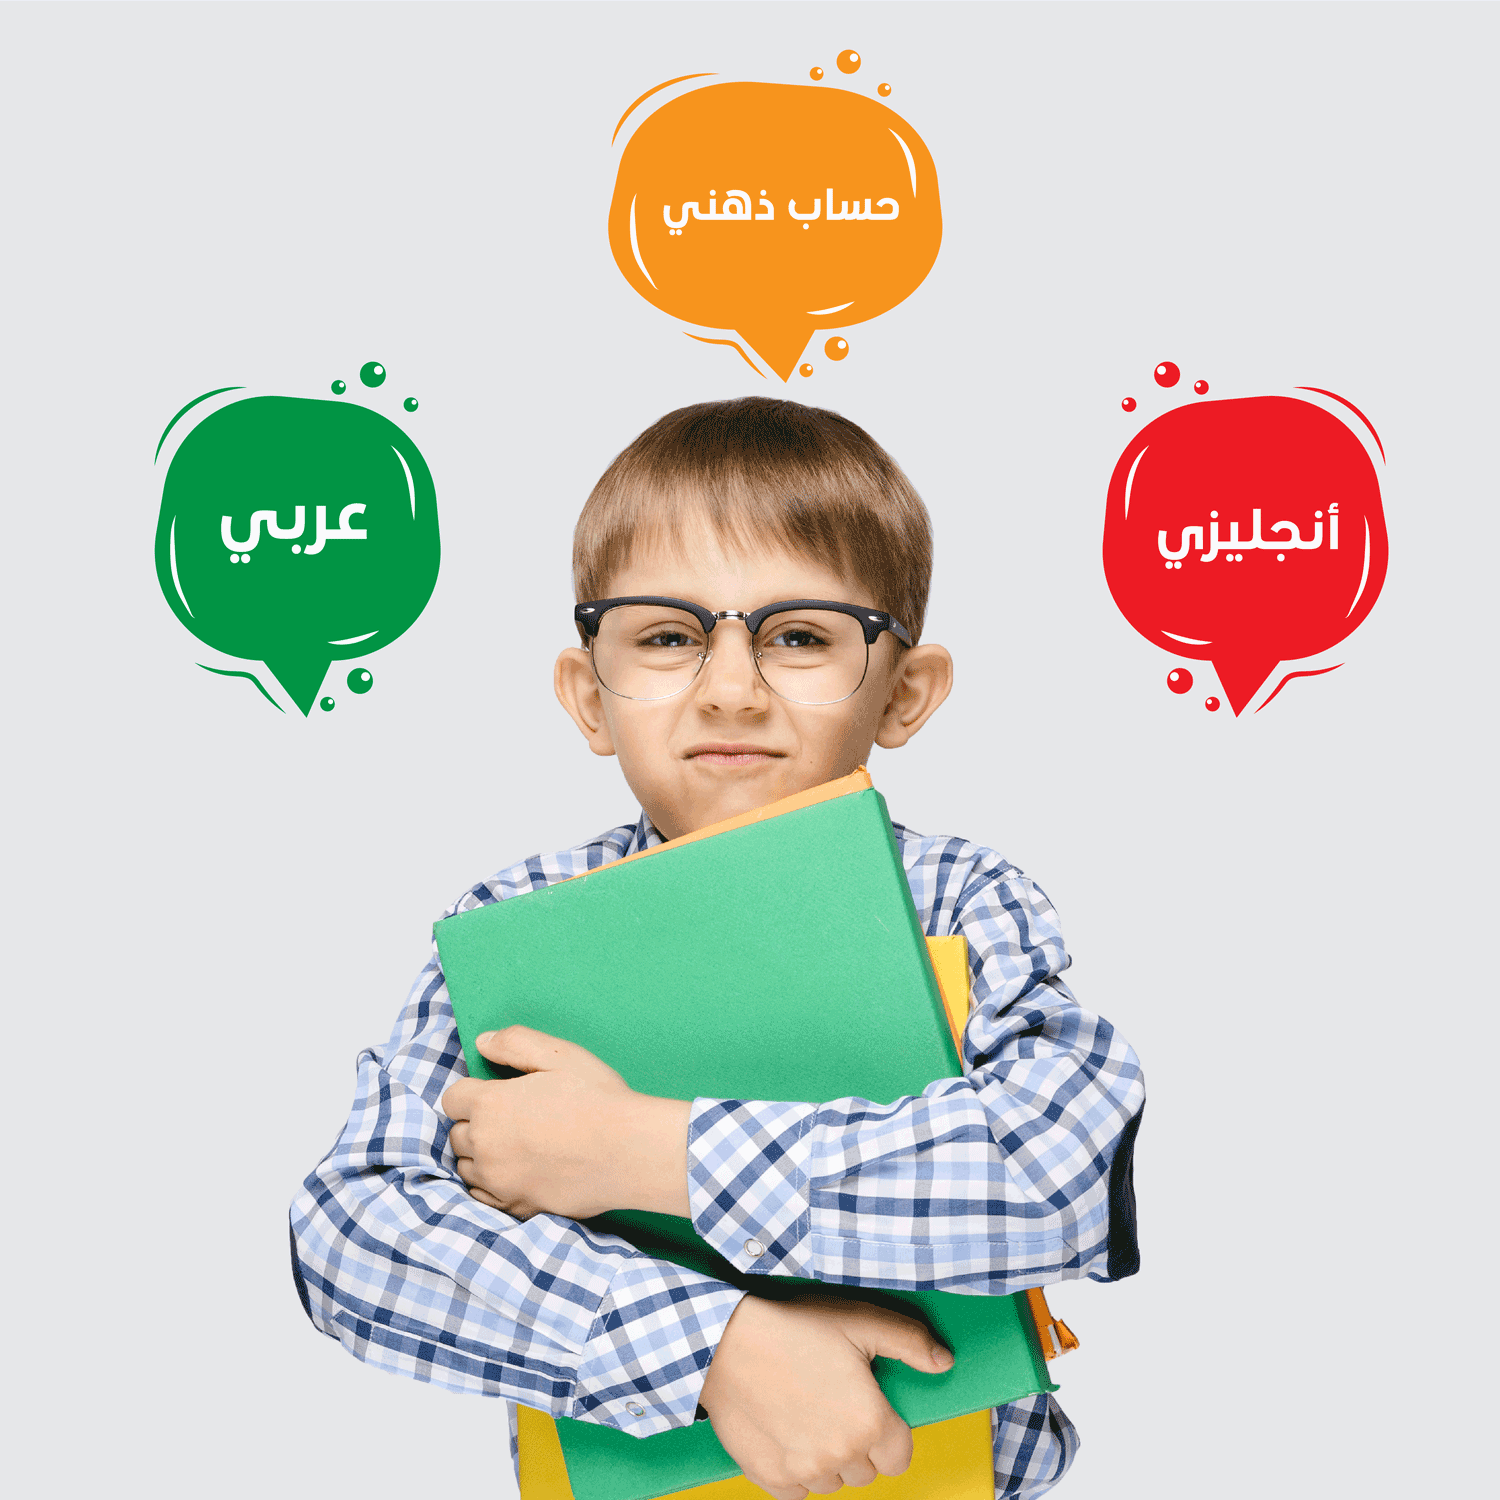 دورة اللغة العربية والانجليزية والحساب الذهني - elmadrasah.com